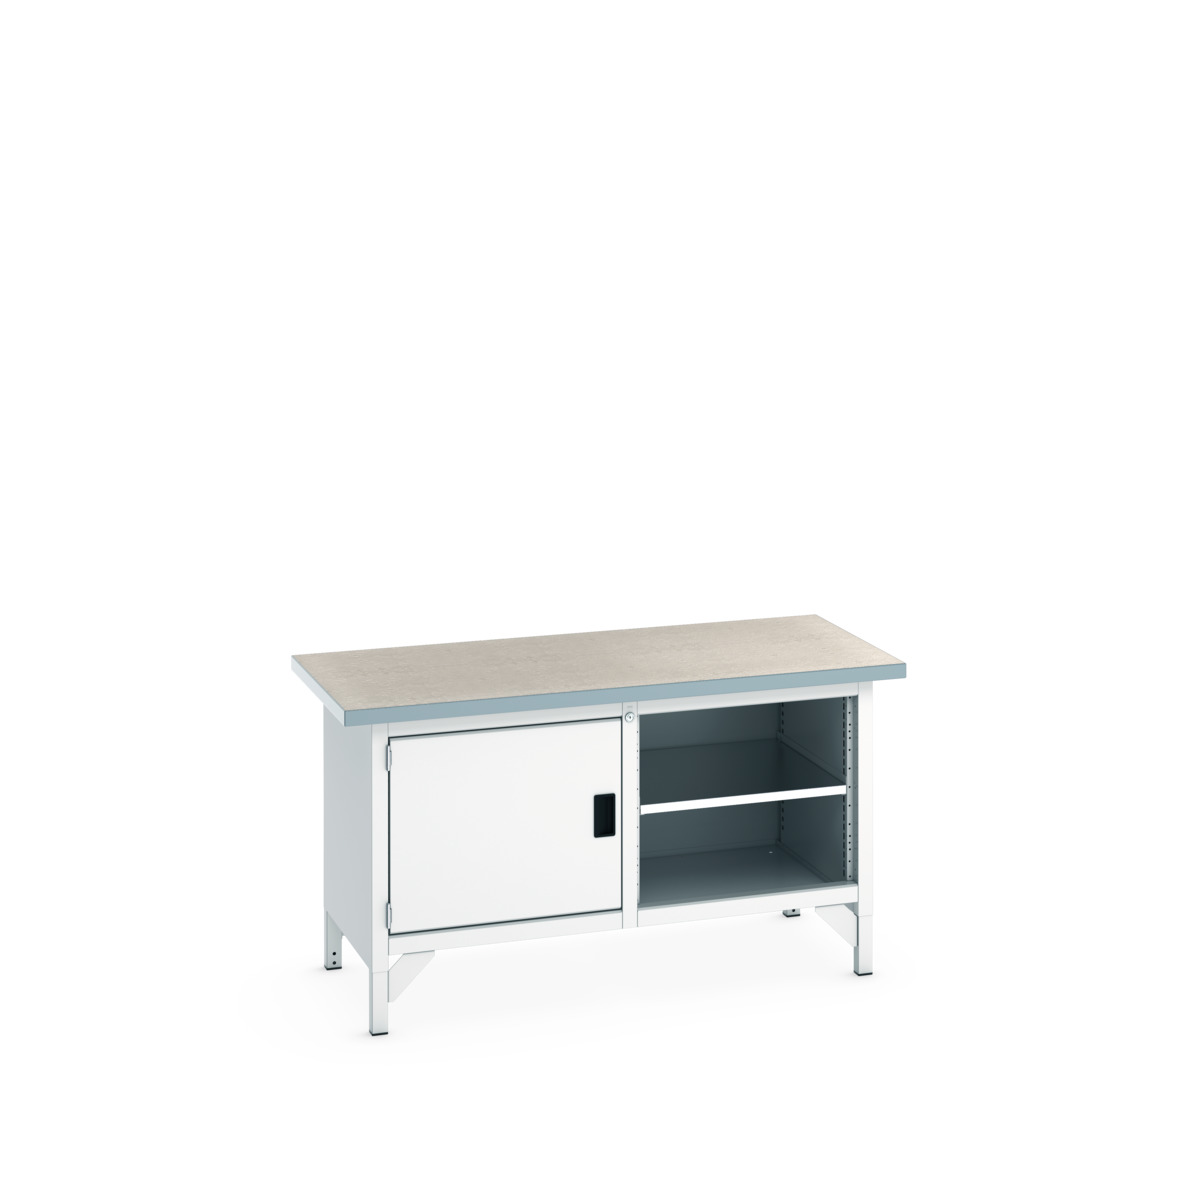 41002021.16V - cubio storage bench (lino)